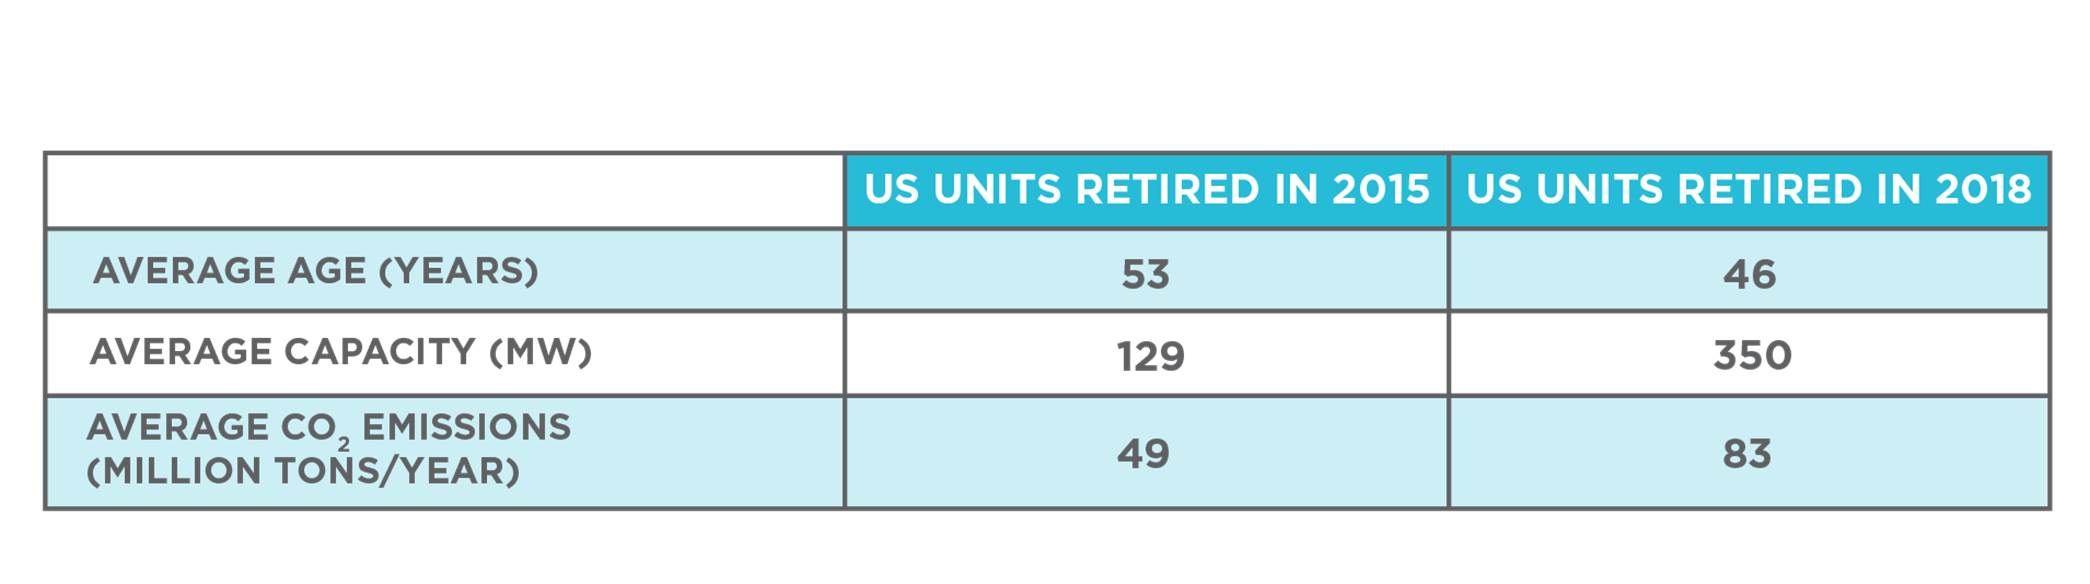 Comparison of Average U.S. Units Retired in 2015 vs. 2018